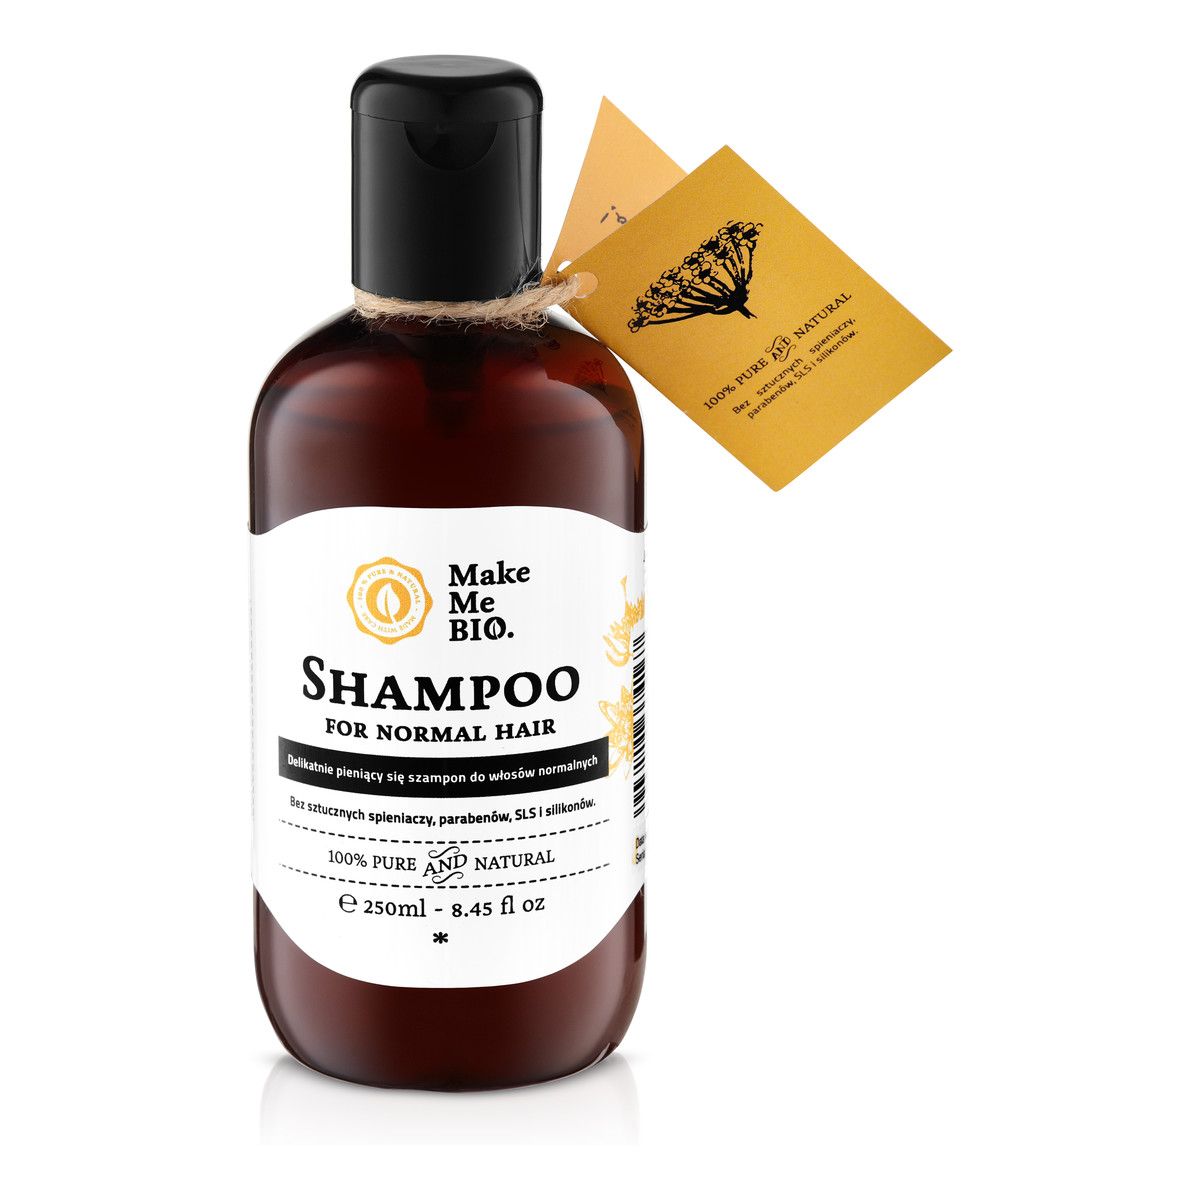 Make Me Bio Delikatnie pieniący się szampon do włosów normalnych 250ml